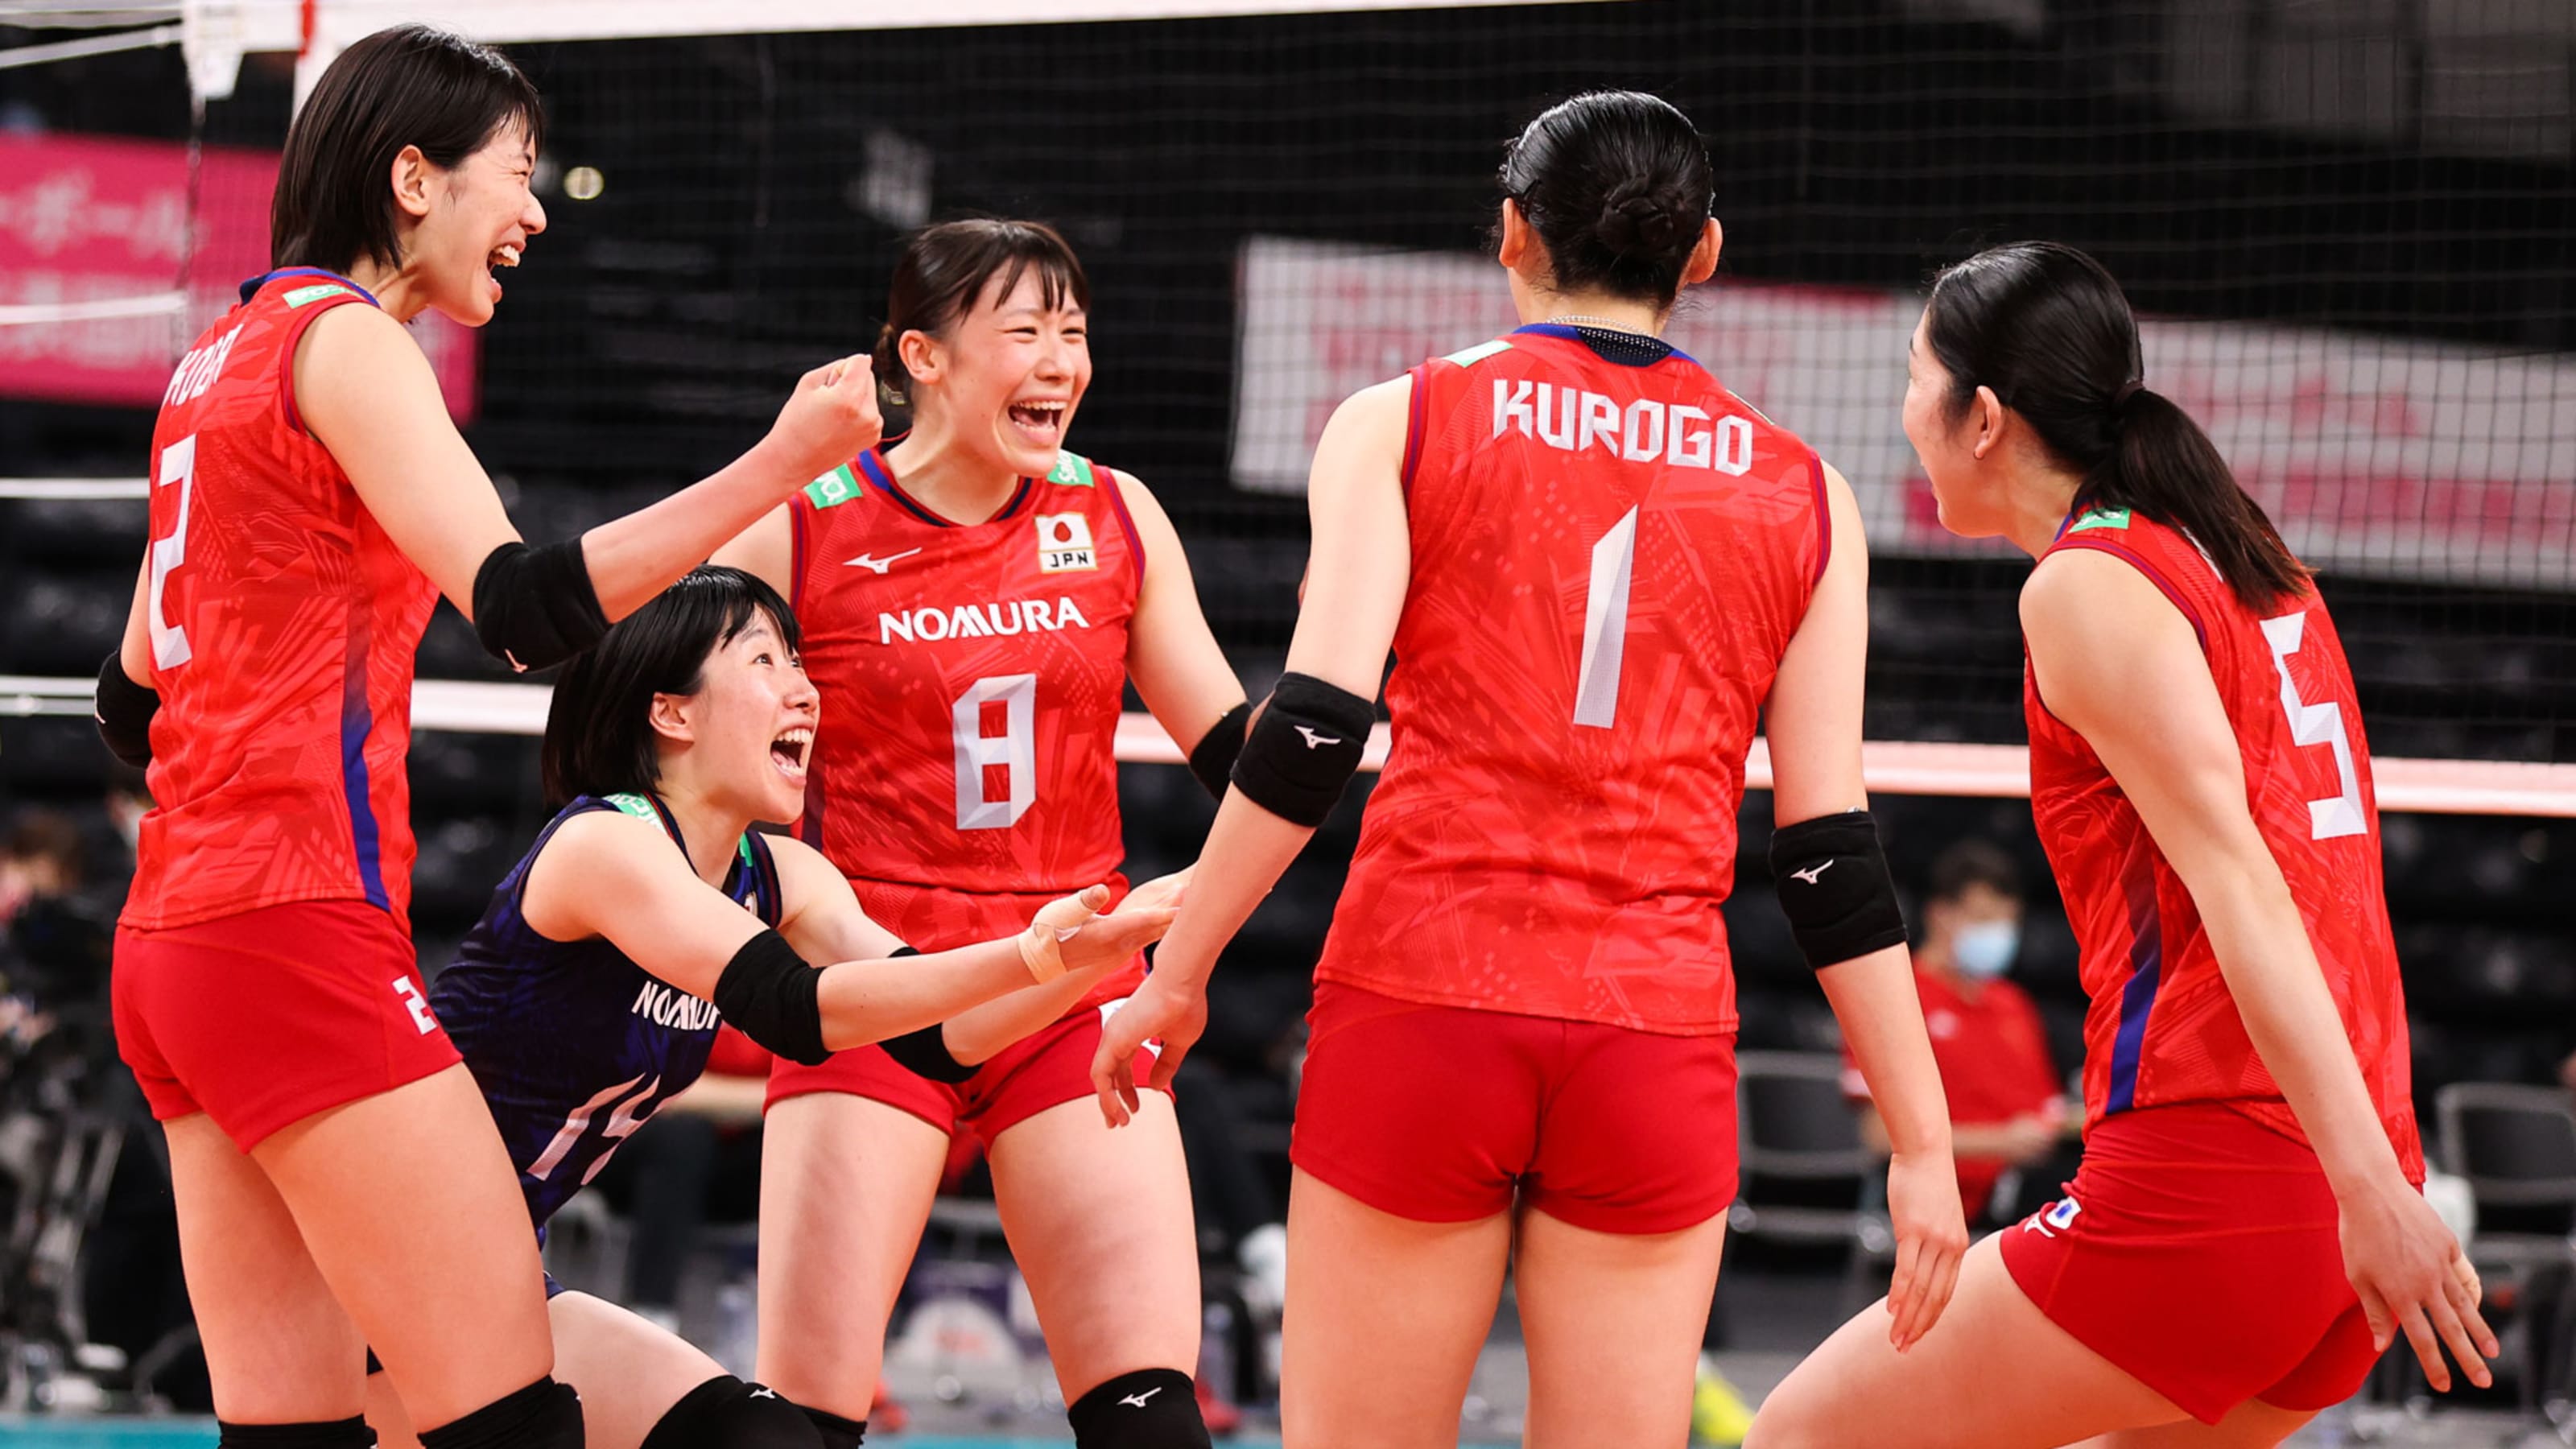 7月25日 東京五輪 女子バレーボールの放送予定 日本はケニア代表と初戦